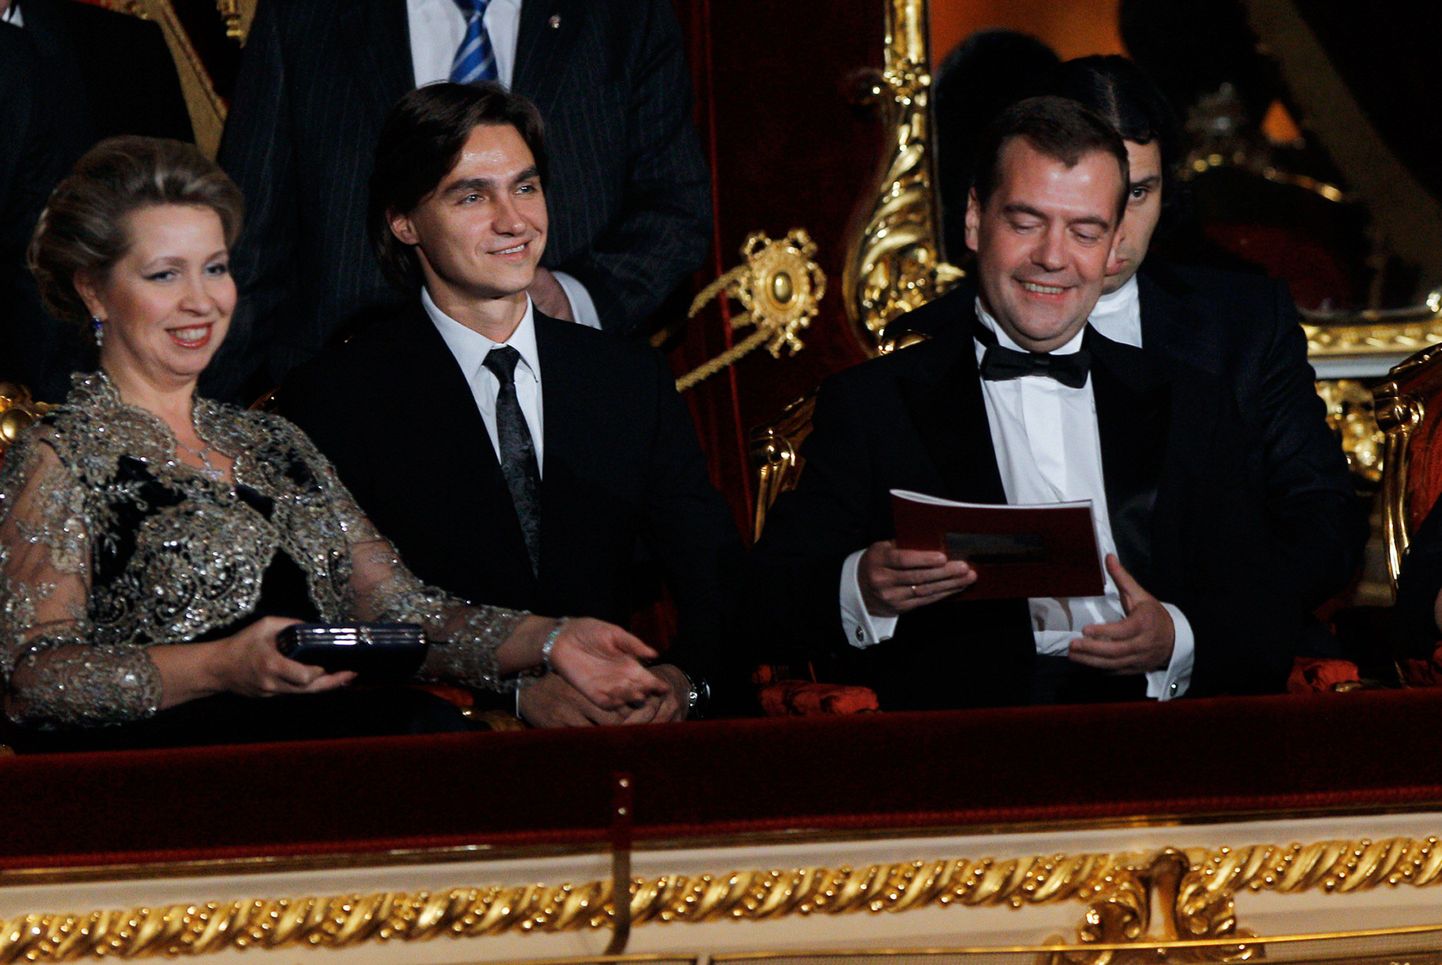 Oktoobris 2011 tehtud fotol istub Suure Teatri balletitrupi kunstiline juht Sergei Filin publiku seas koos presidendi Dmitri Medvedevi ja tema abikaasa Svetlana Medvedevaga.